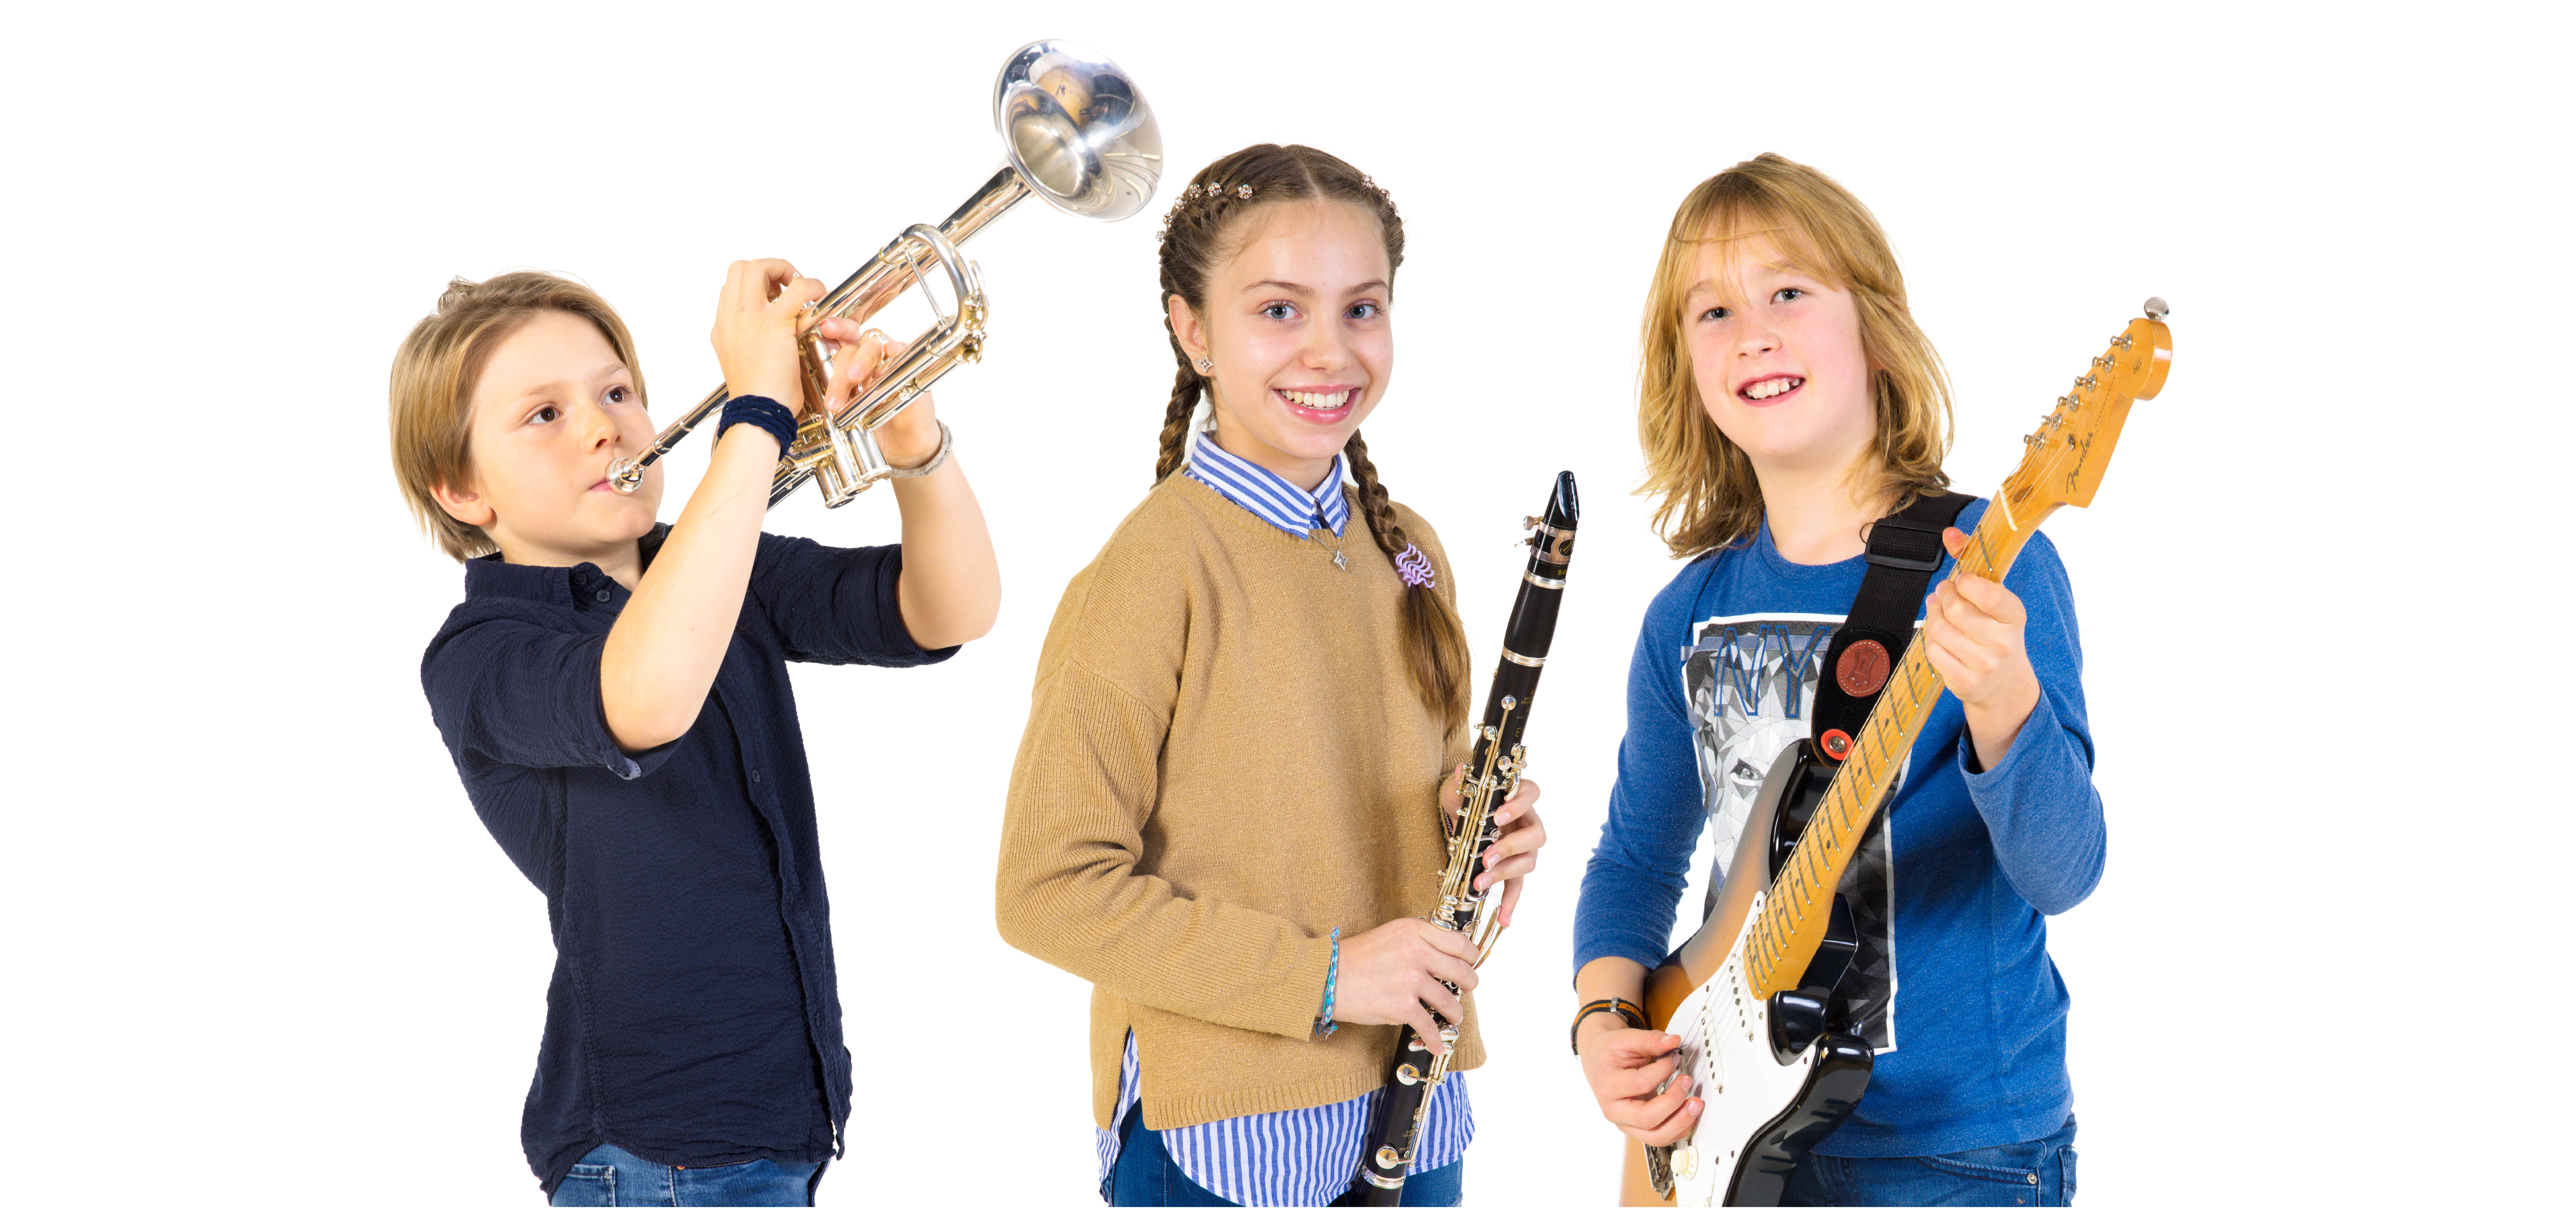 Zwei Jungen und ein Mädchen im Kinderalter. Sie spielen oder halten jeweils ein Instrument. E-Giterre, Oboe und Trompete.